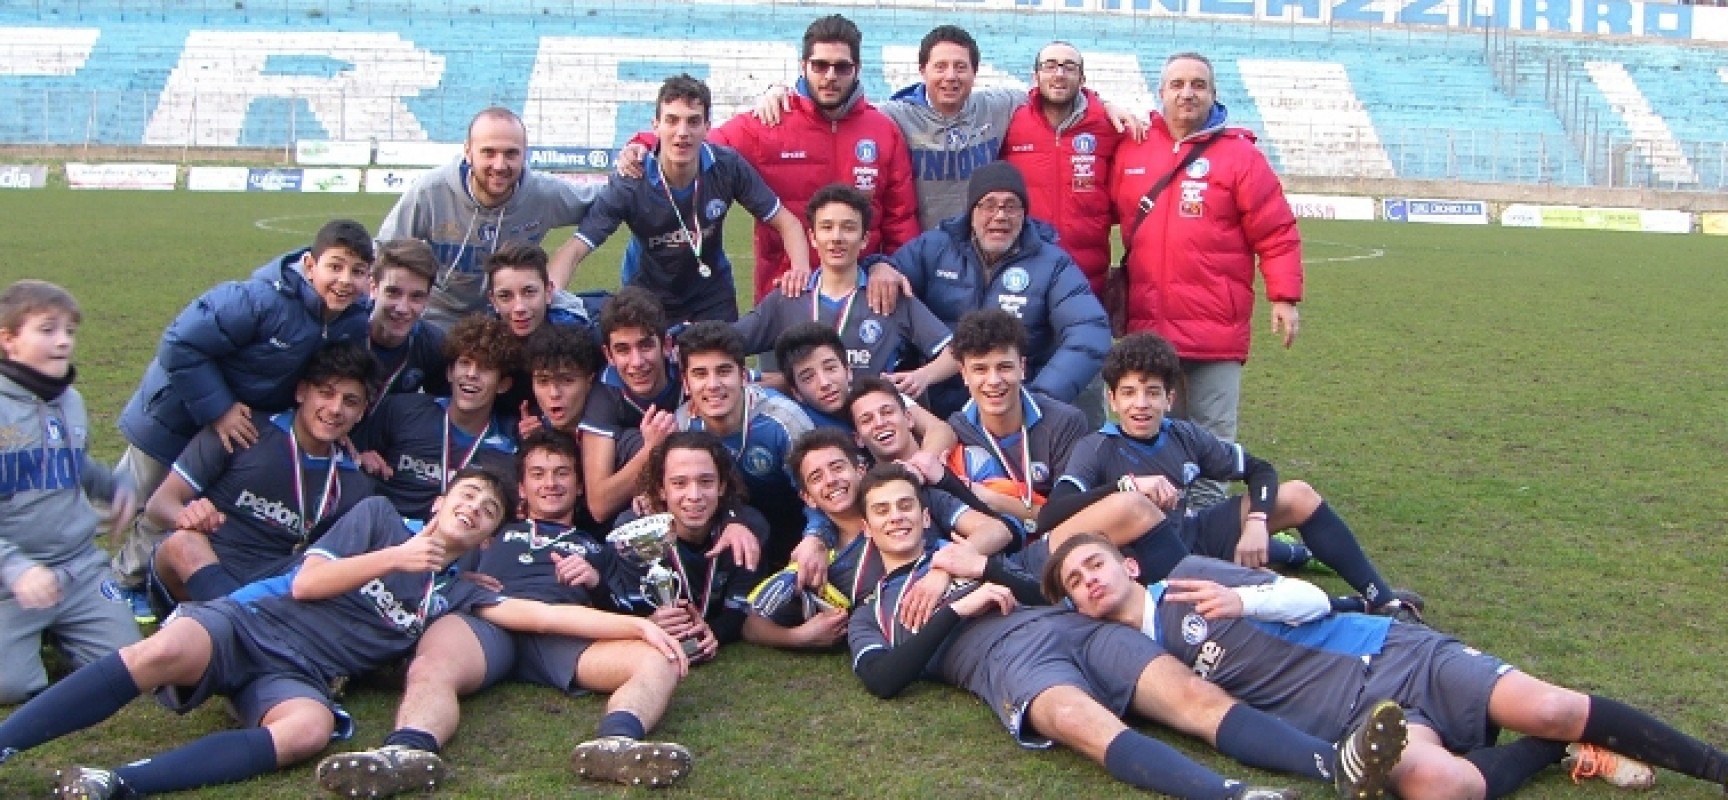 Unione Calcio campione provinciale Allievi, battuto in finale il Don Uva